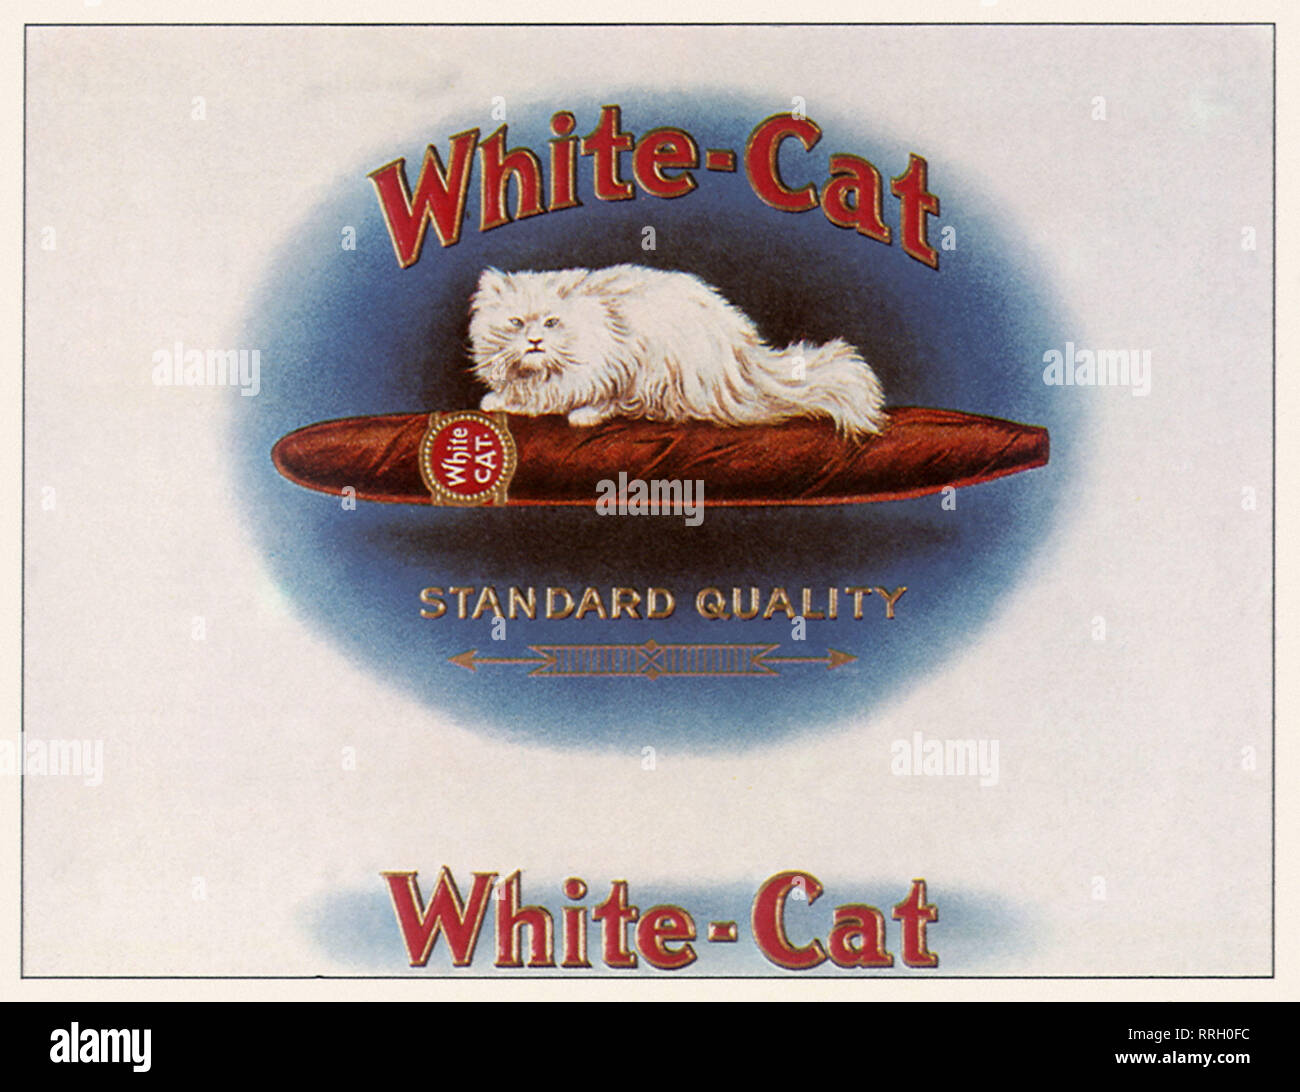 White-Cat les cigares. Banque D'Images